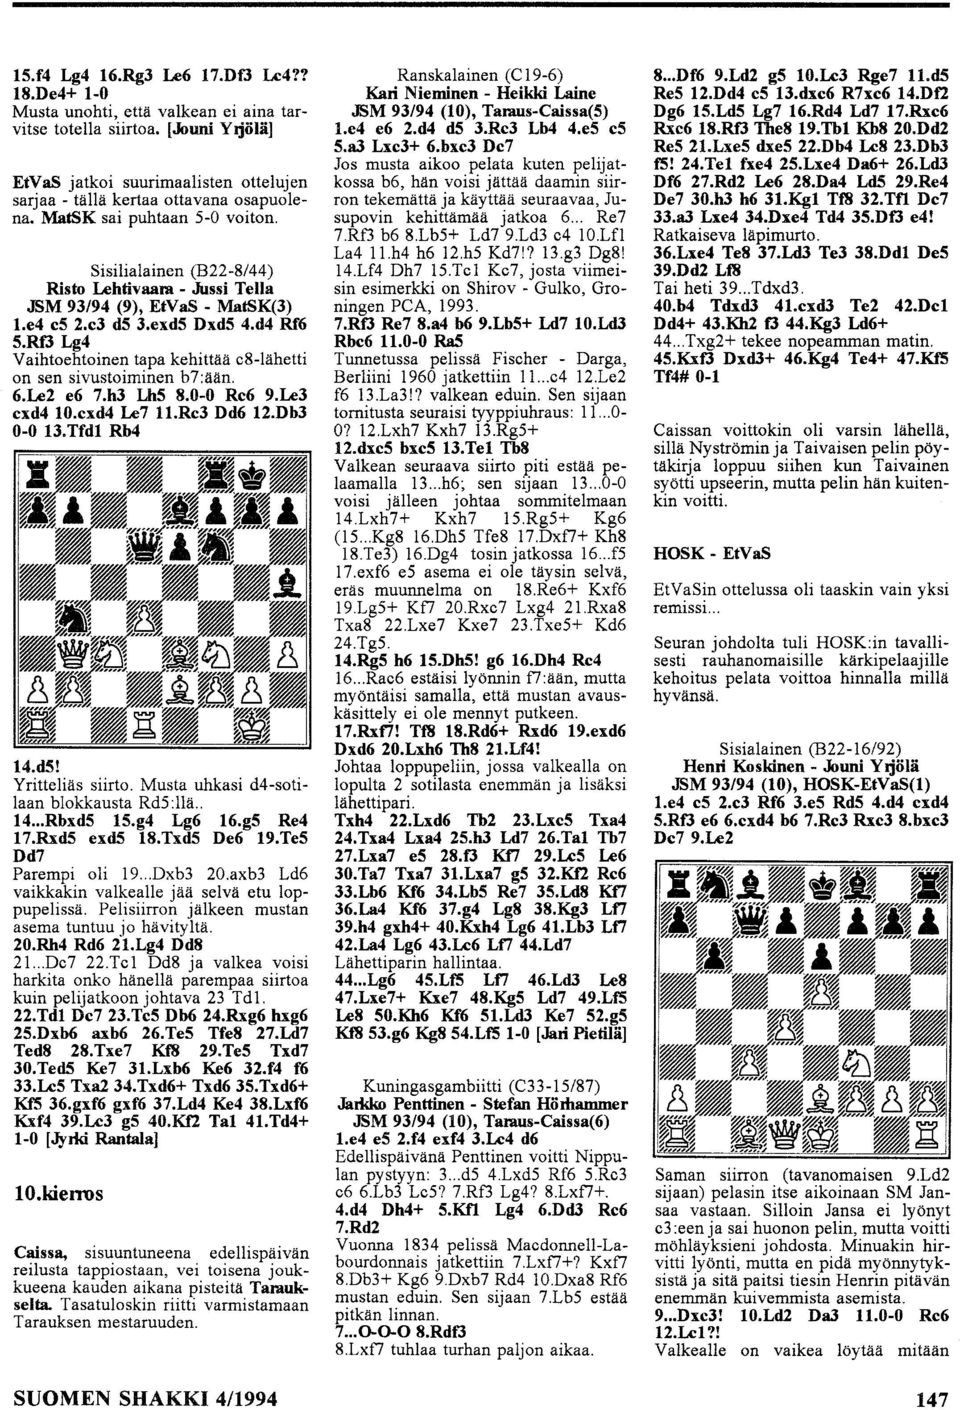 Rf3 Lg4 Vaihtehtinen tapa kehittää c8-lähetti n sen sivustiminen b7:ään. 6.Le2 e6 7.h3 LhS 8.0-0 Rc6 9.Le3 cxd4 0.cxd4 Le7.Rc3 Dd6 2.Db3 0-0 3. Tfdl Rb4 4.dS! Yritteliäs siirt.